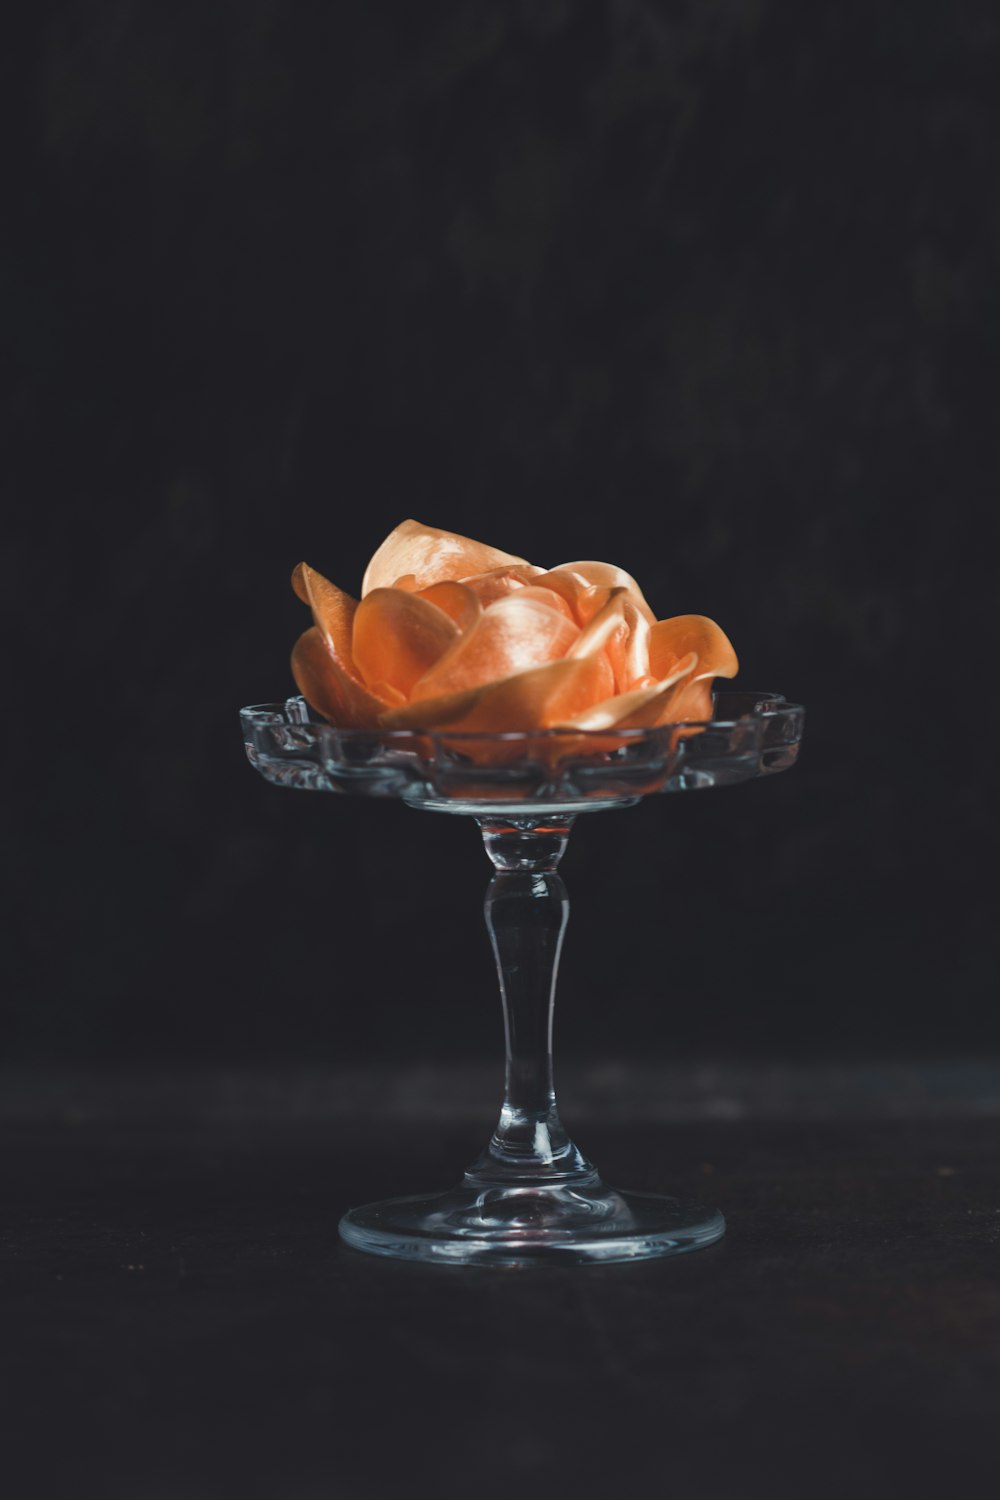 flor de naranja en jarrón con patas de vidrio sobre fondo negro